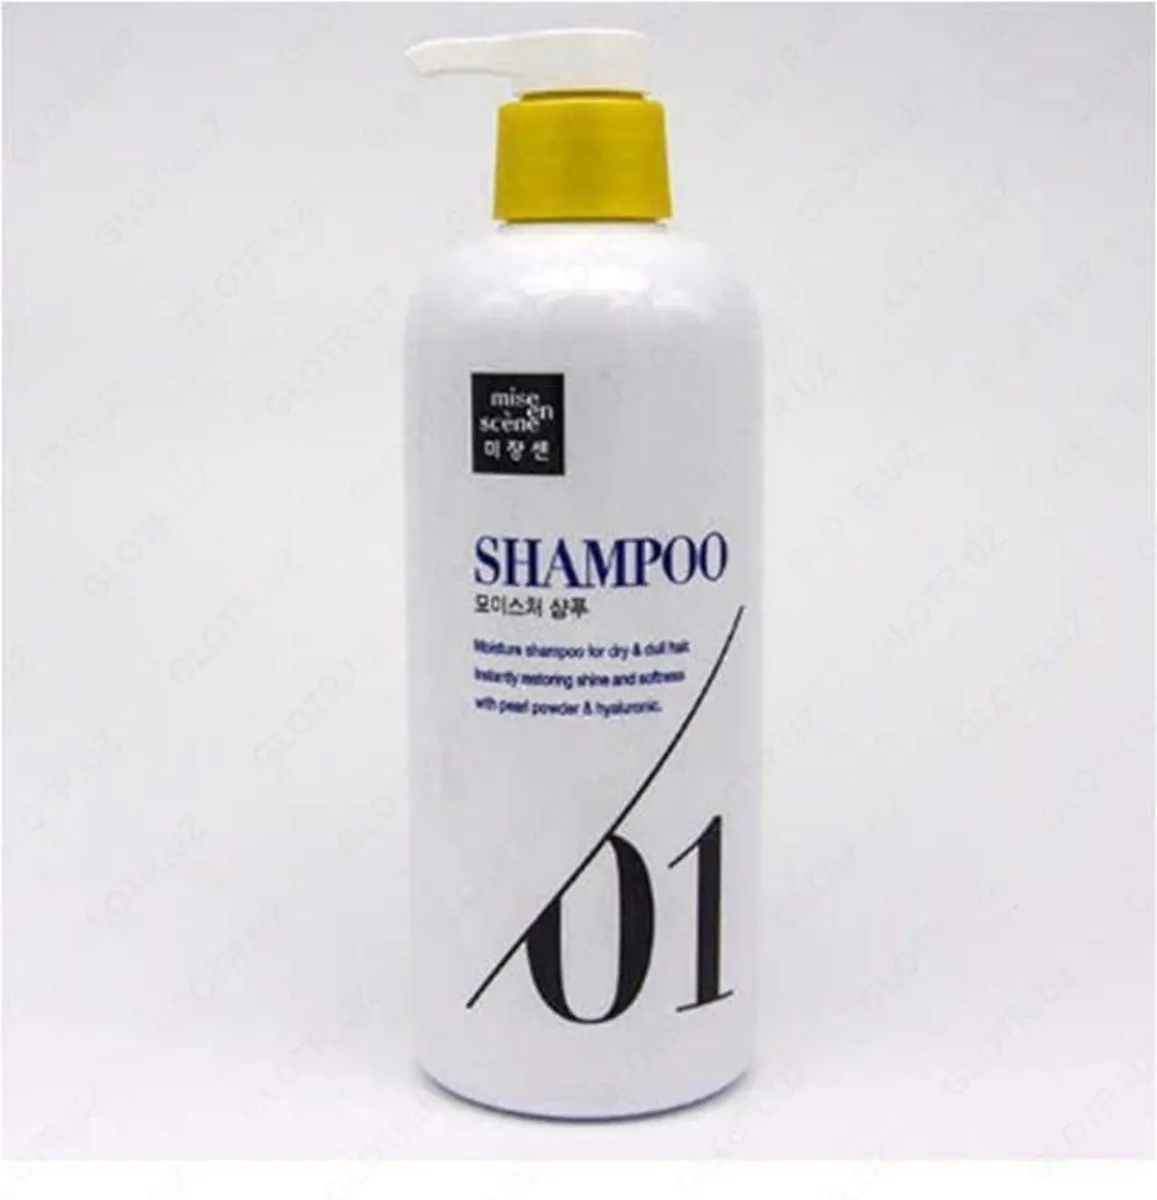 Увлажняющий шампунь - Pearl Smooth & Silky Moisture 01 Shampoo#1